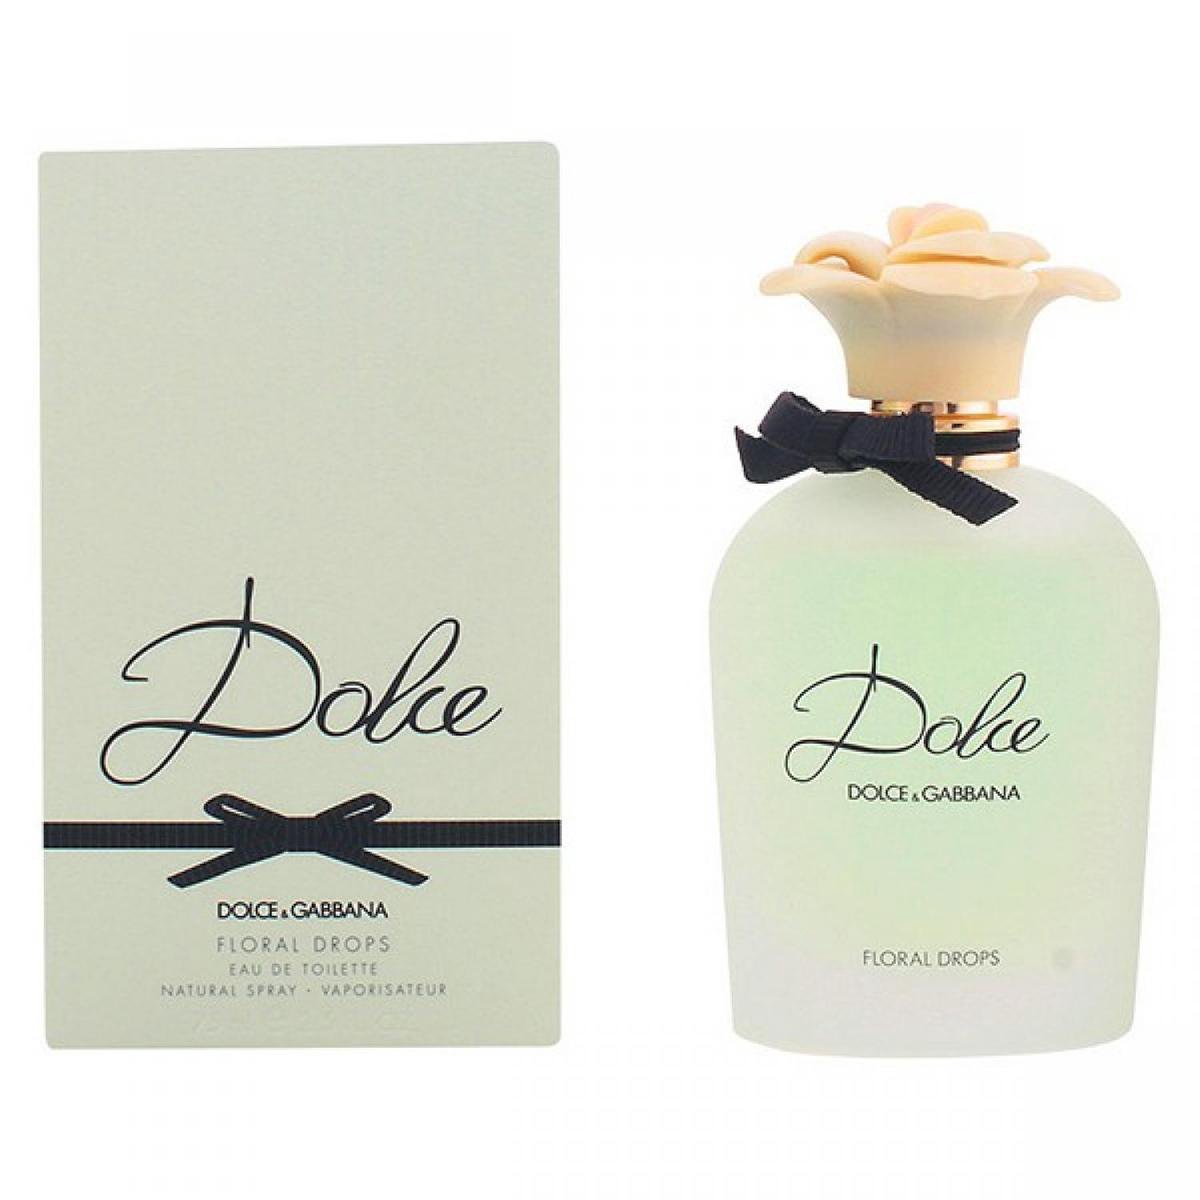 Dolce & Gabbana Floral Drops - 75ml - Eau de toilette